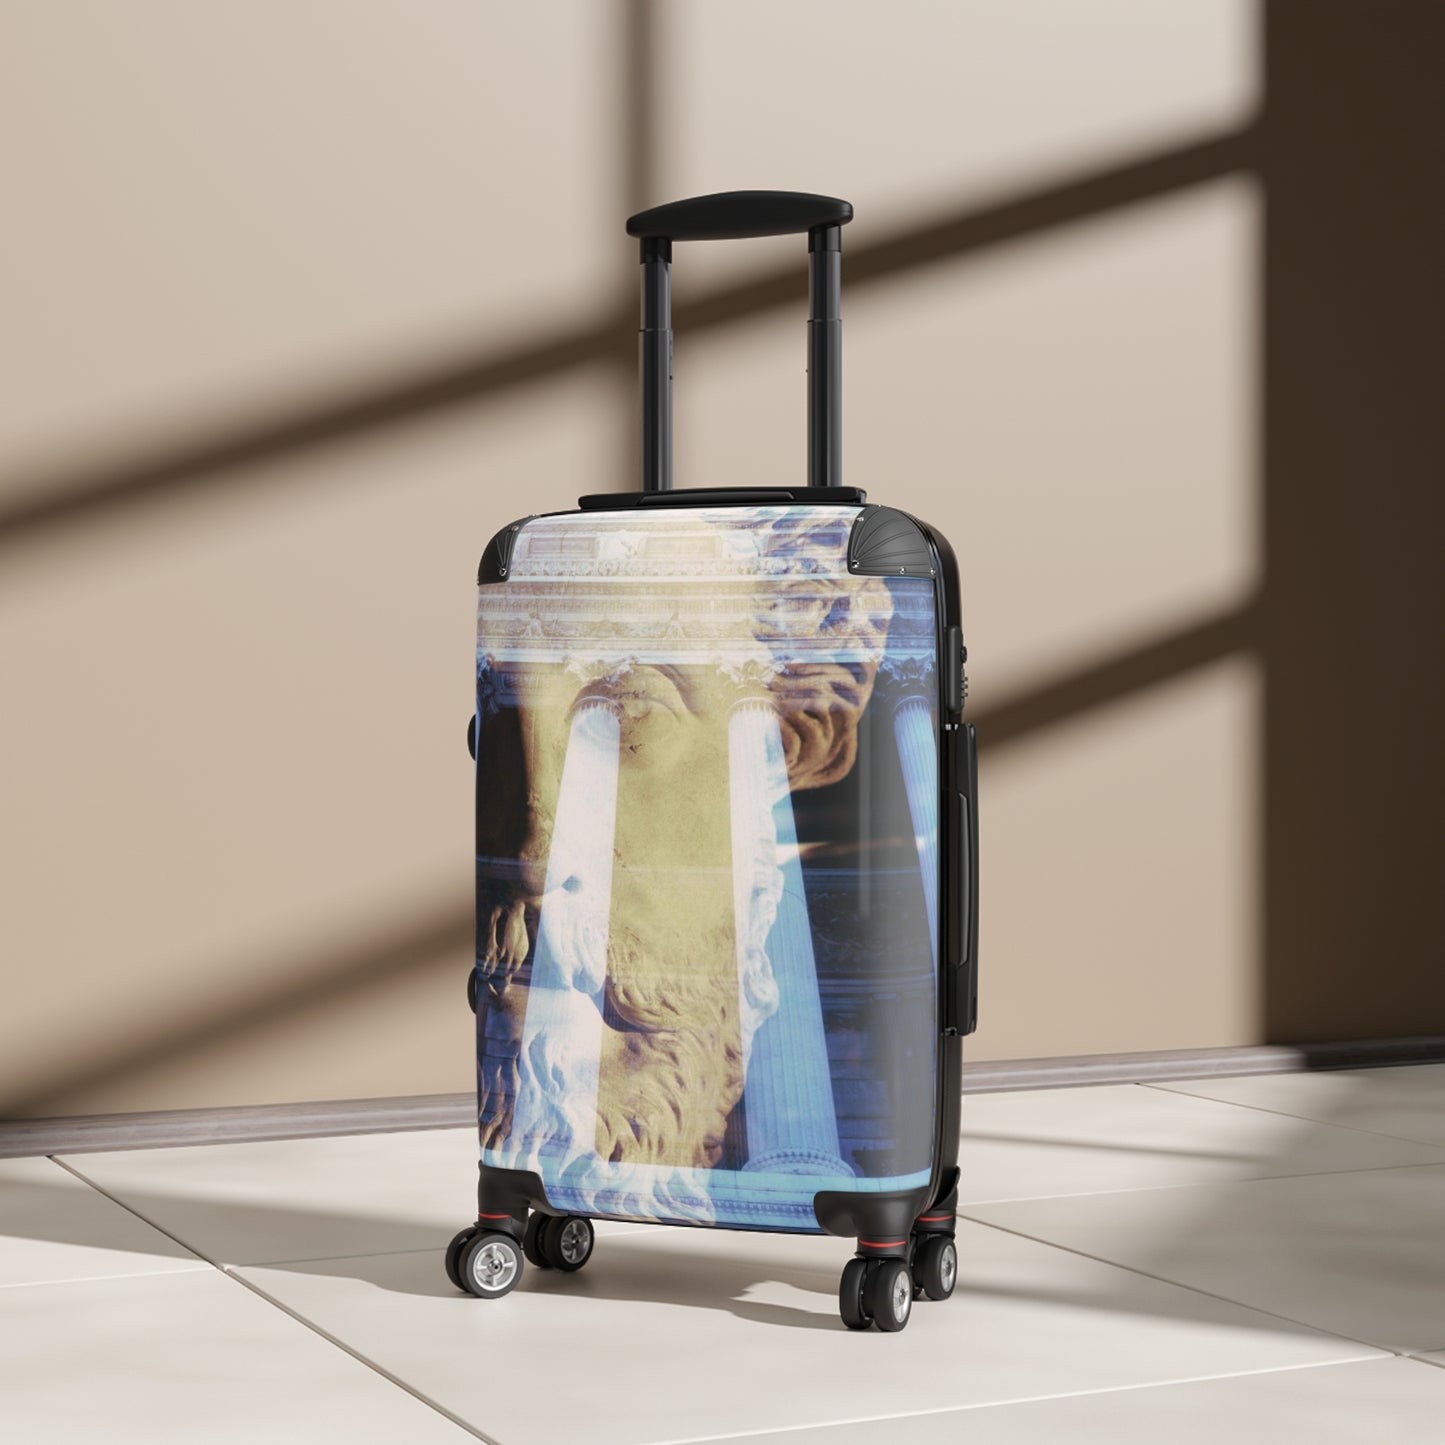 Visions of Marcus Aurelius Luggage